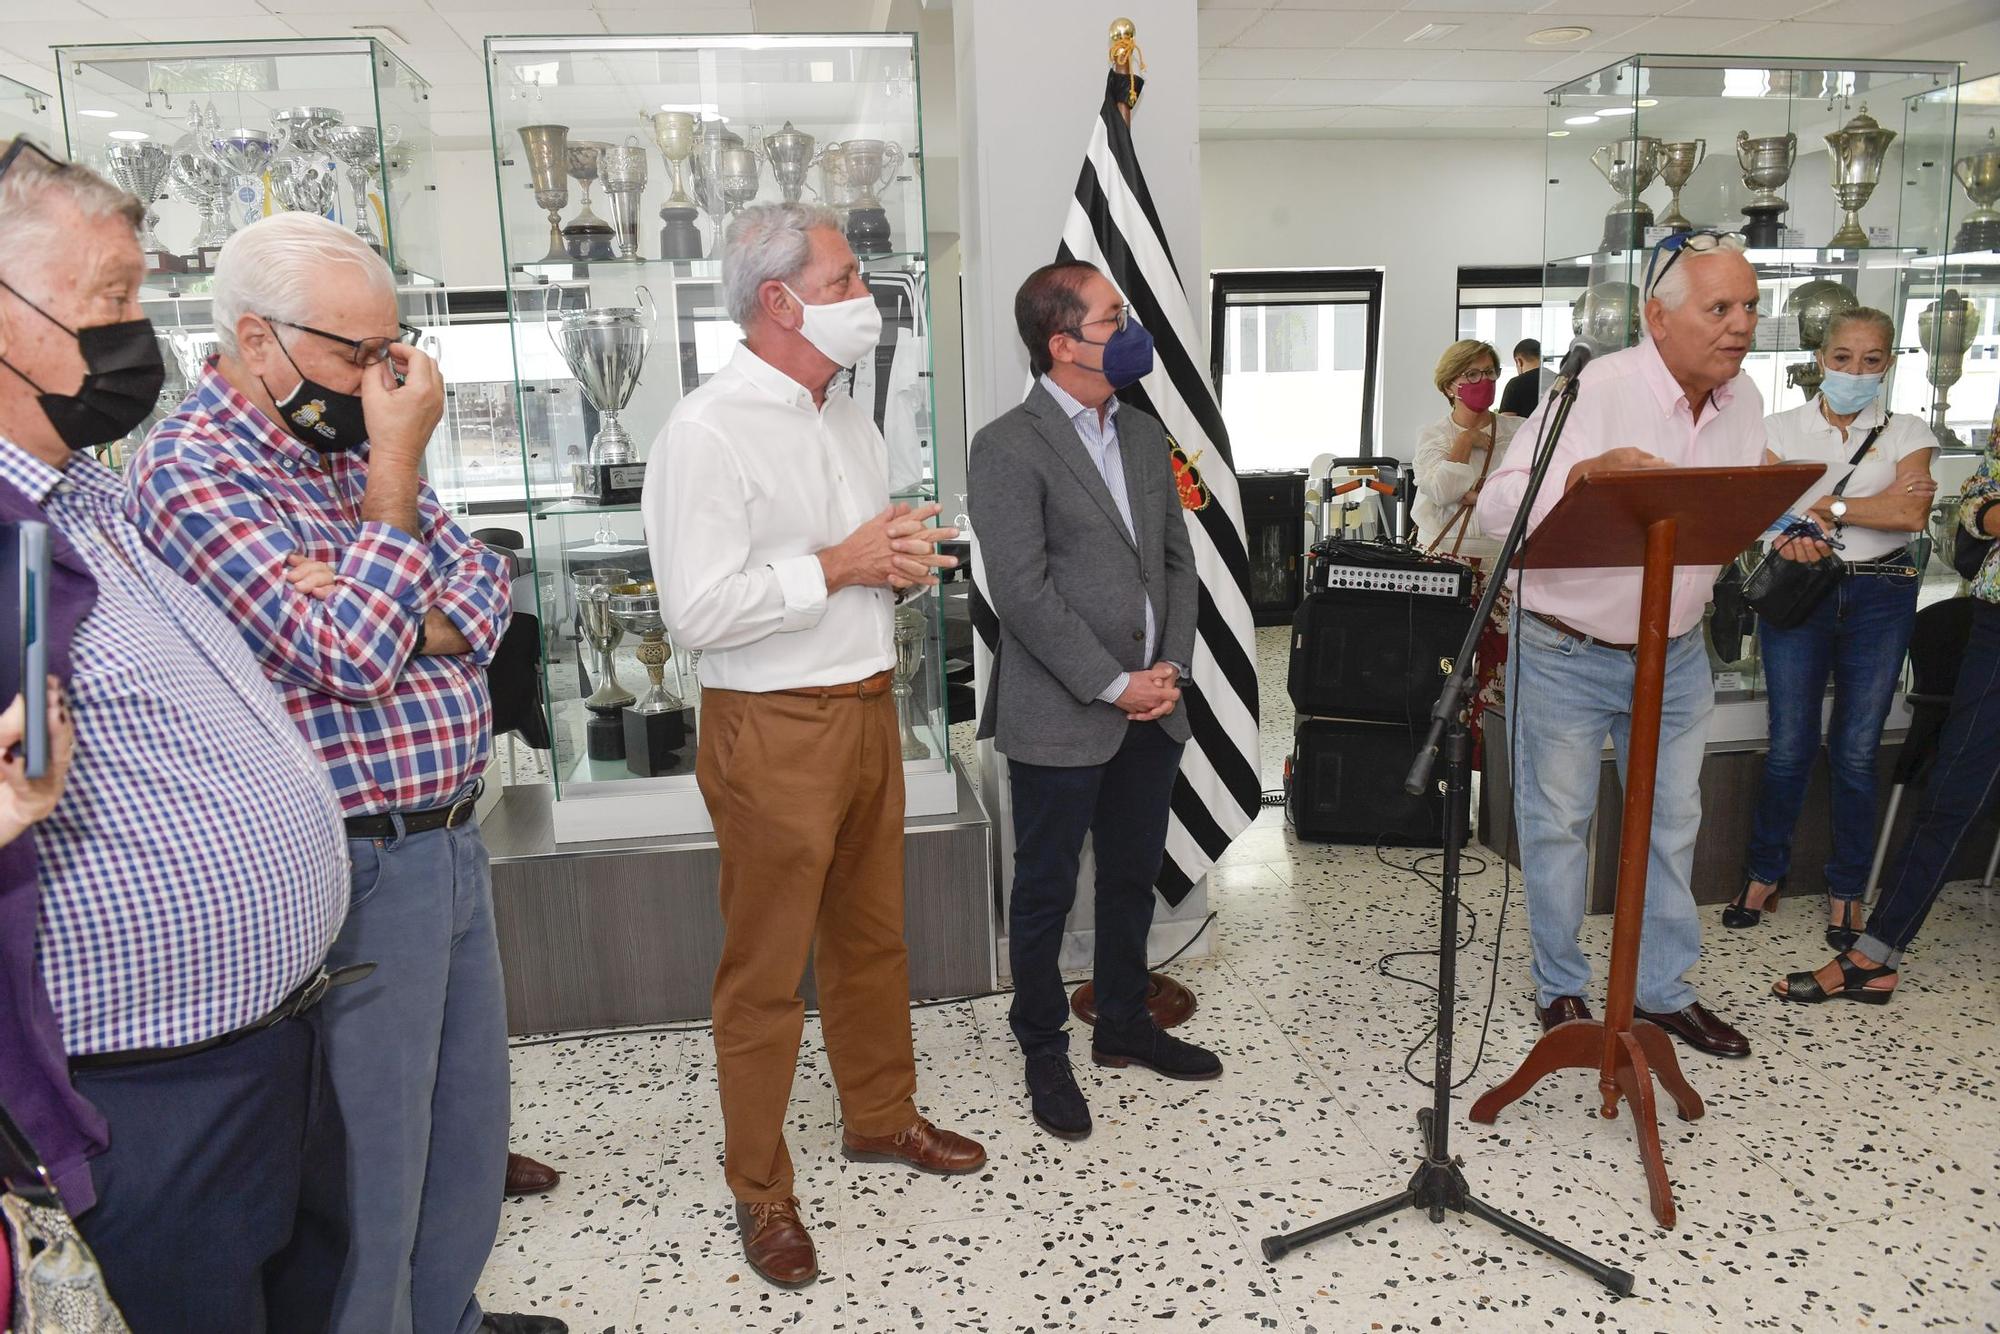 Inauguración en el Club Victoria de la exposición dedicada a José Padrón 'El Sueco'